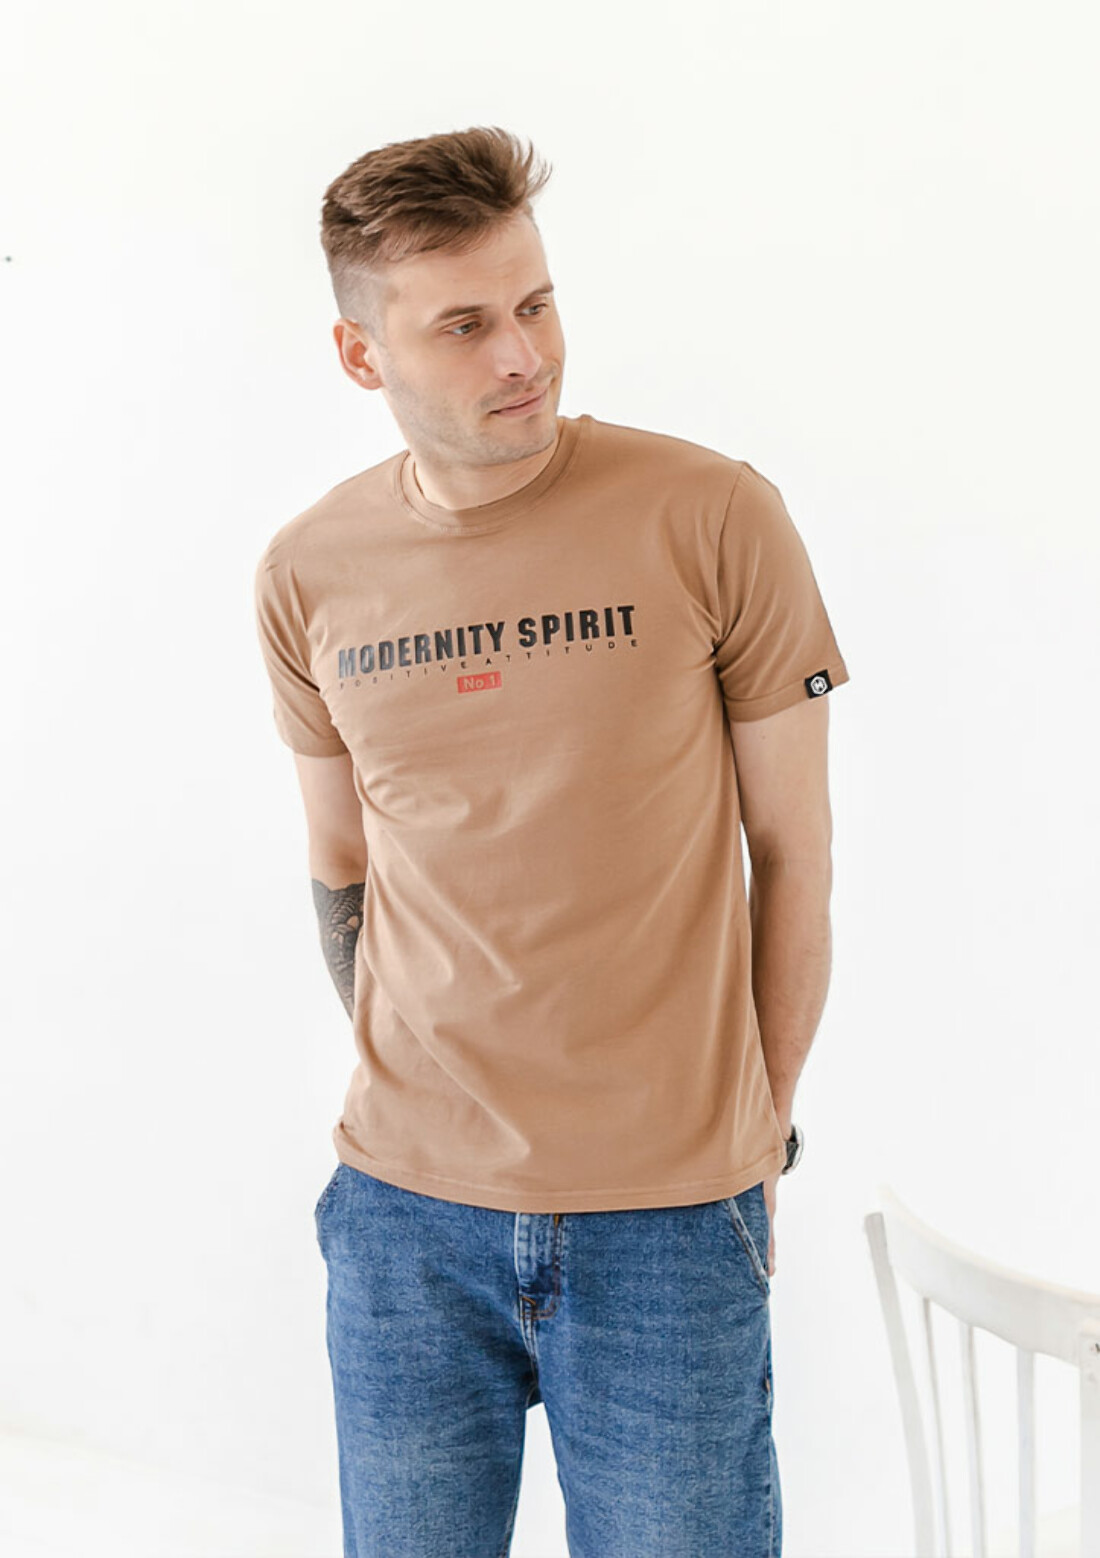 Чоловіча футболка modernity spirit 40042